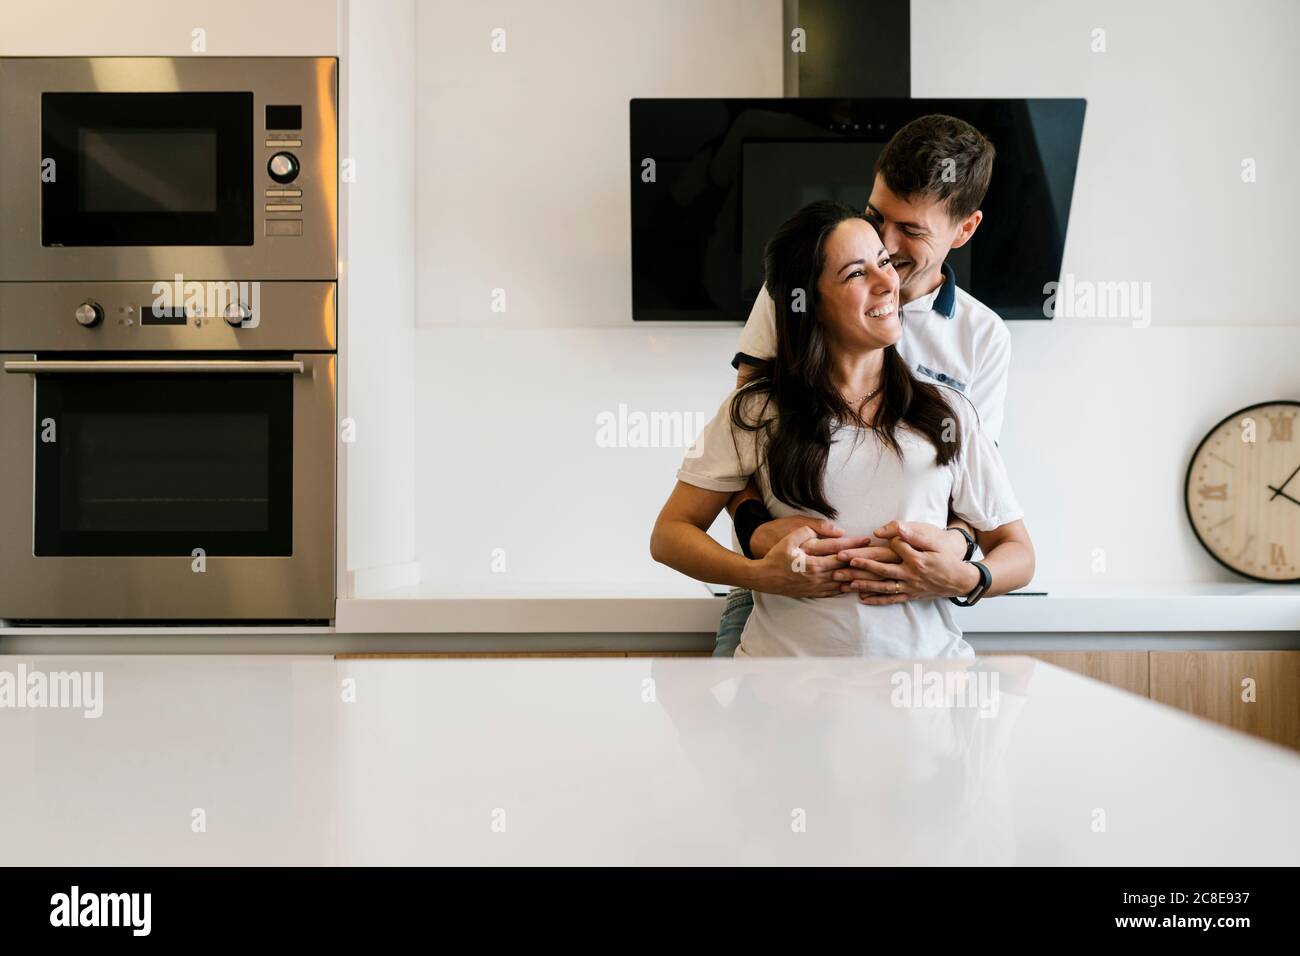 Lächelnder Mann umarmt Frau von hinten in Küche Stockfoto